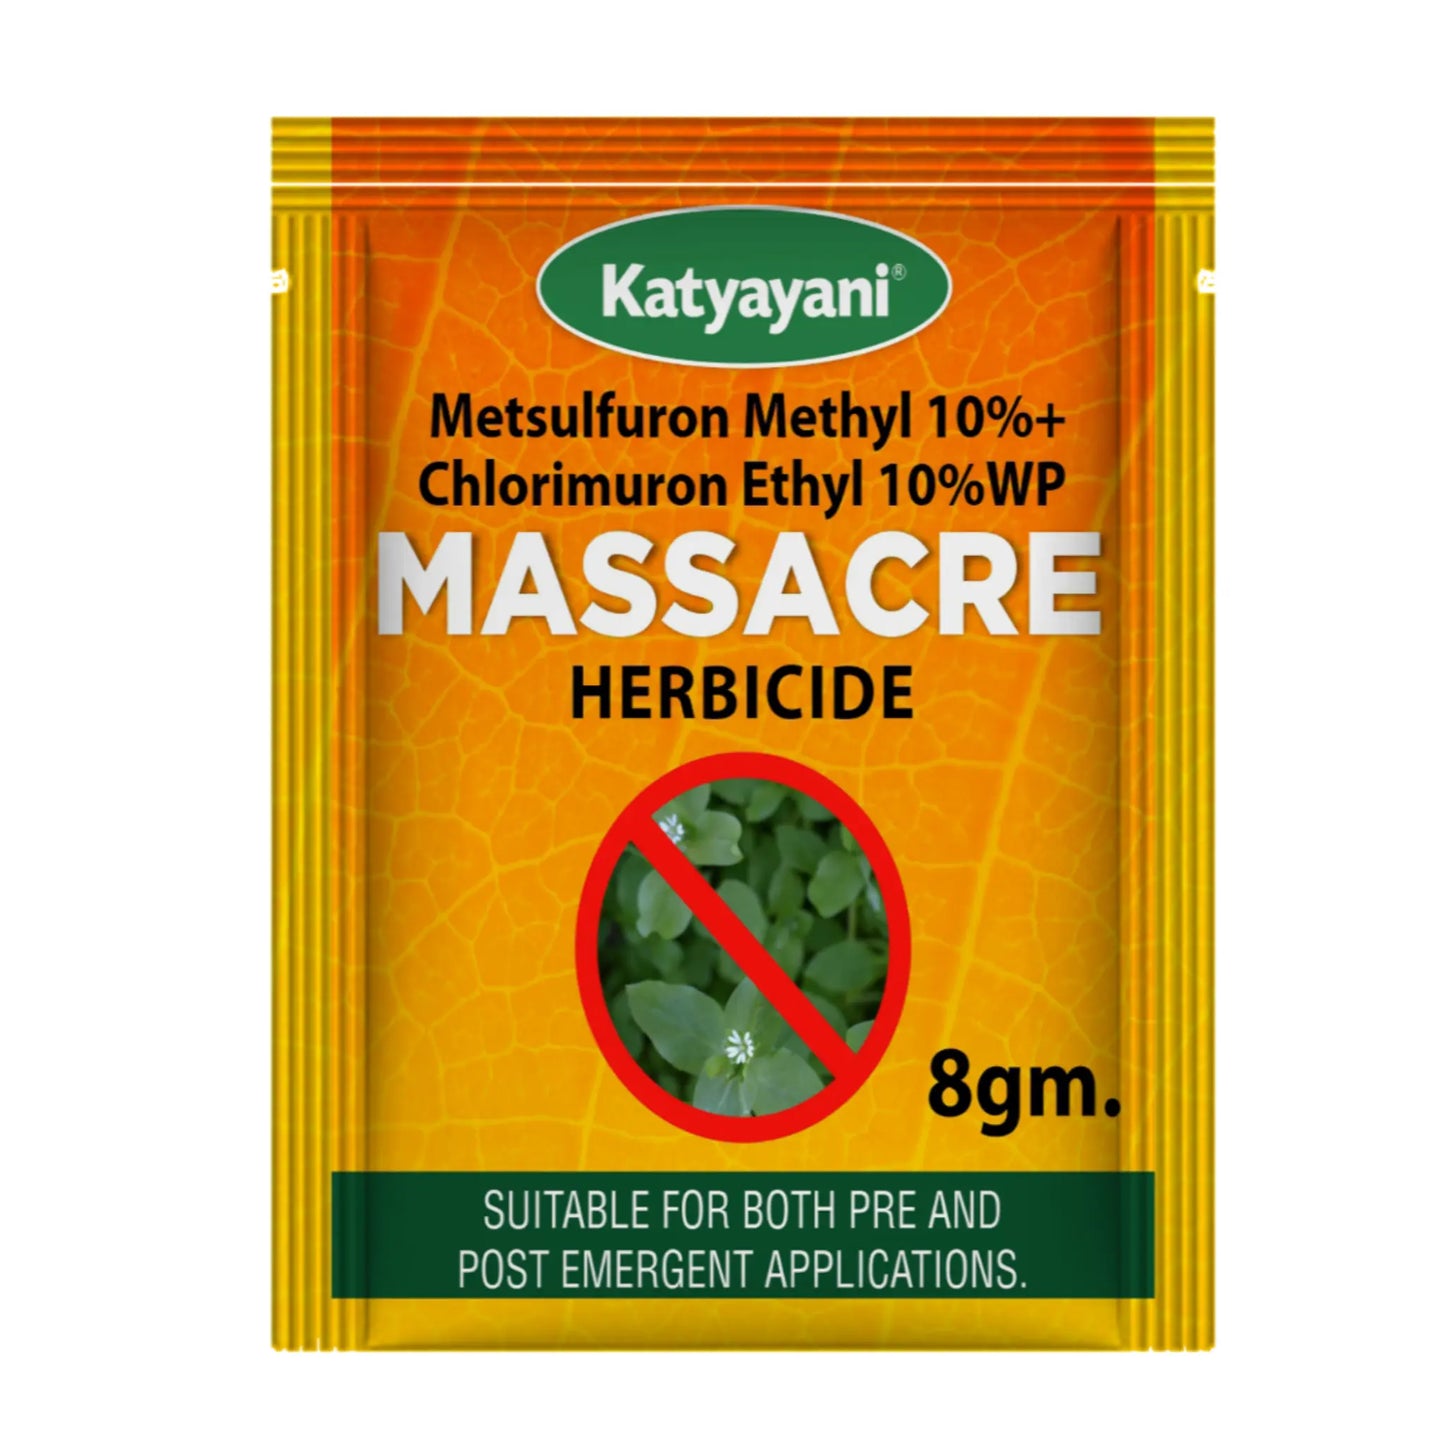 Katyayani Massacre || Metsulfuron Methyl 10% + Chlorimuron Ethyl 10% WP